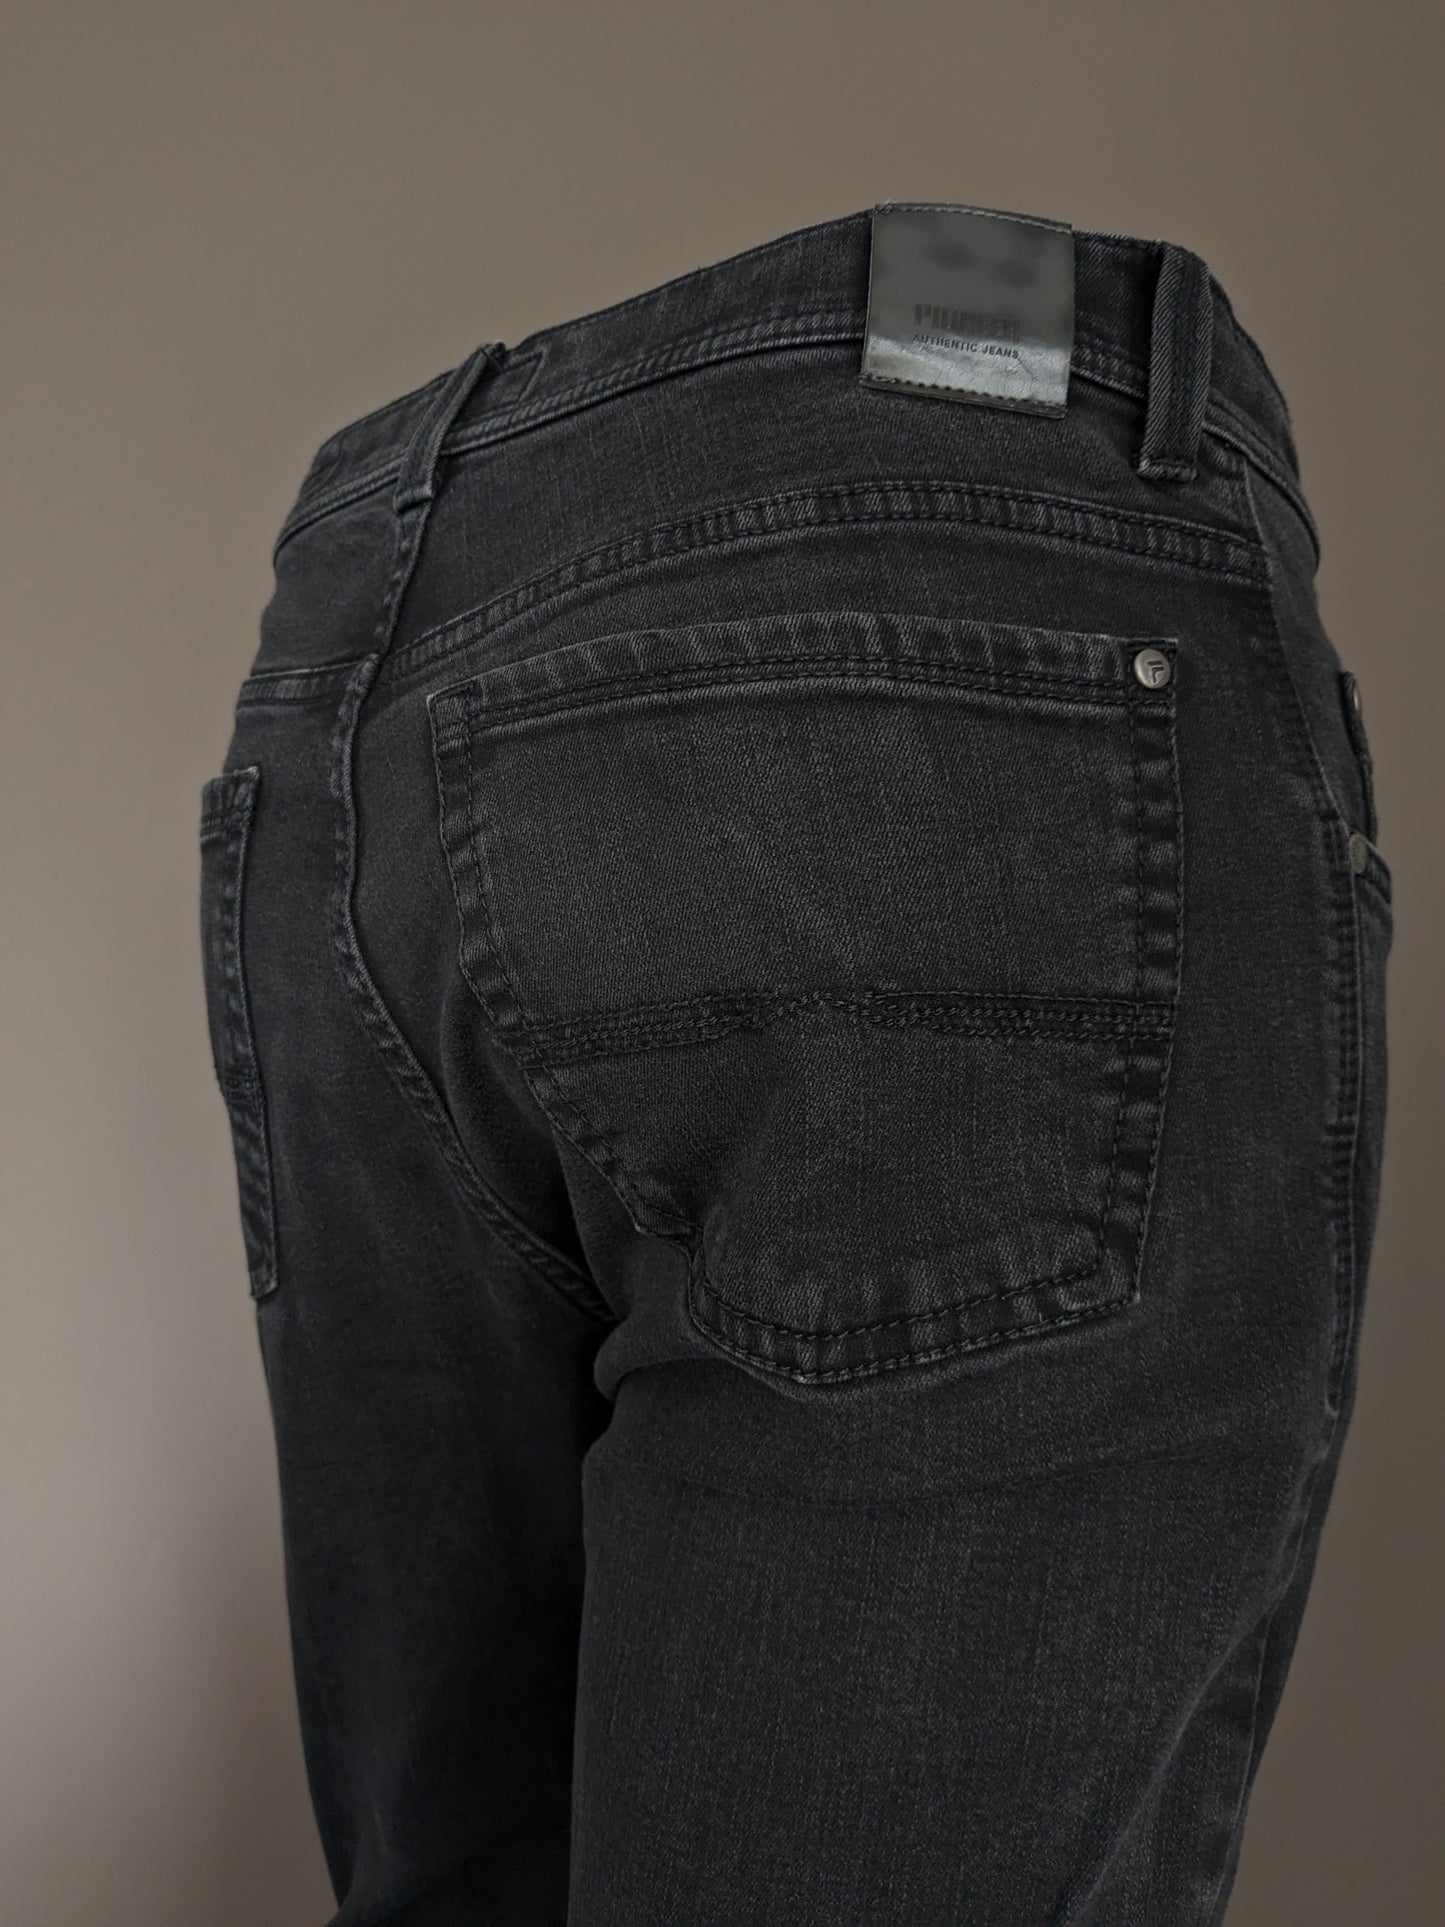 Jeans pionniers. Couleur noire. Tapez Rando. Megaflex. Taille W33 - L30. (raccourci)